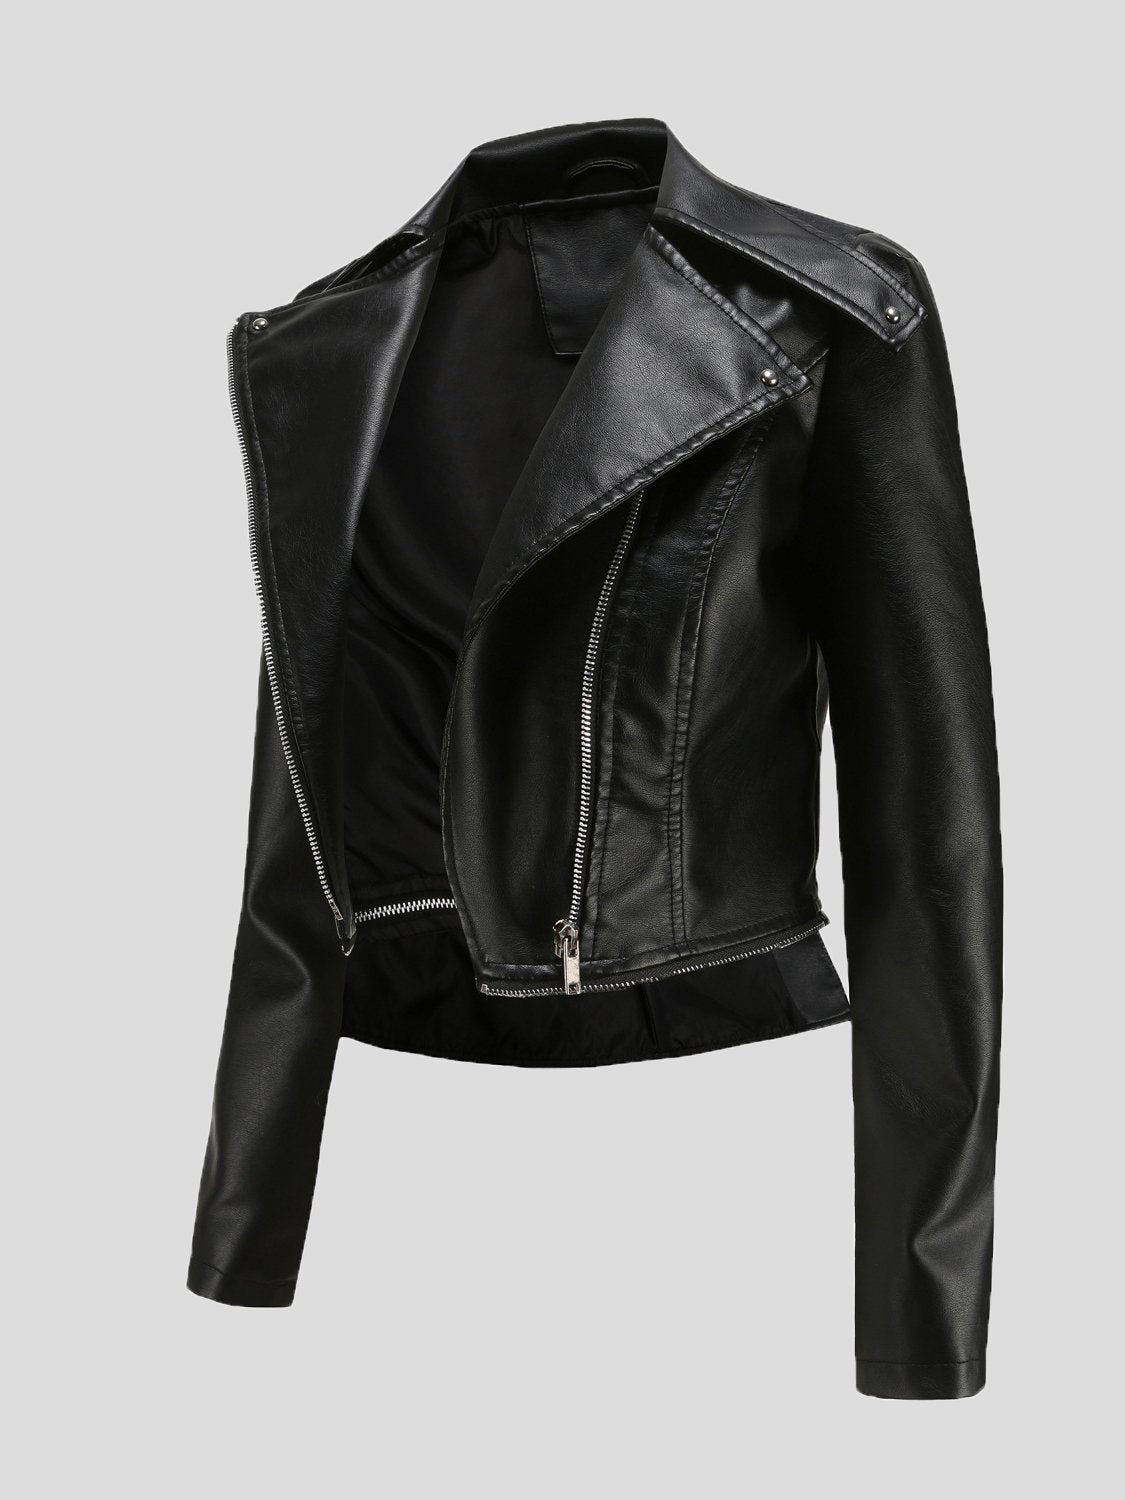 Jackets - Detachable Hem Long Sleeve Fashion Leather Jacket - MsDressly